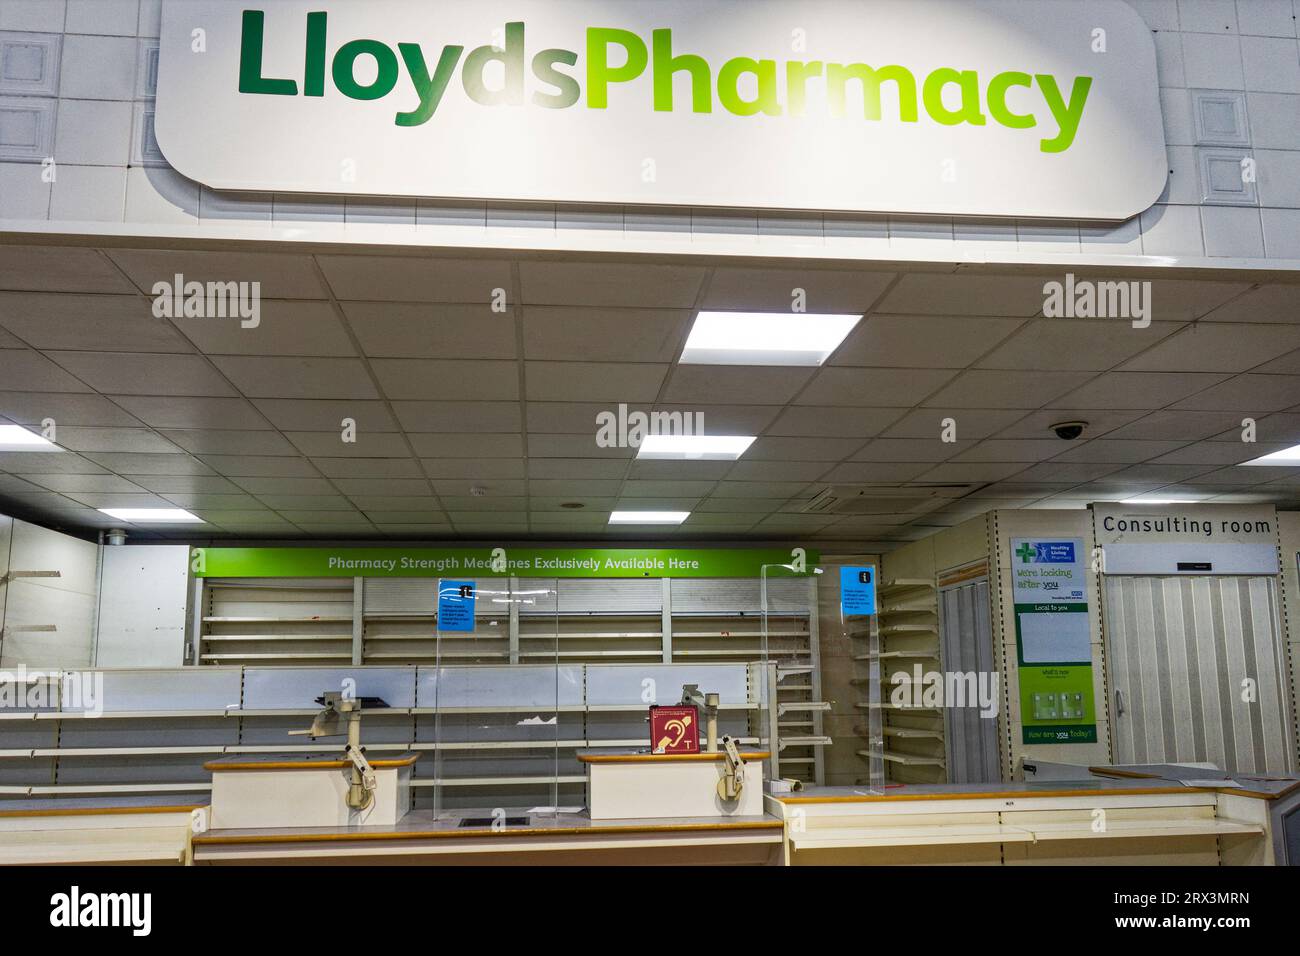 237 magasins de pharmacie Lloyds fermés dans les magasins Sainsbury's, 2023, à la suite de l'acquisition de la société mère de Lloyds, McKesson UK, par une multinationale privée Banque D'Images